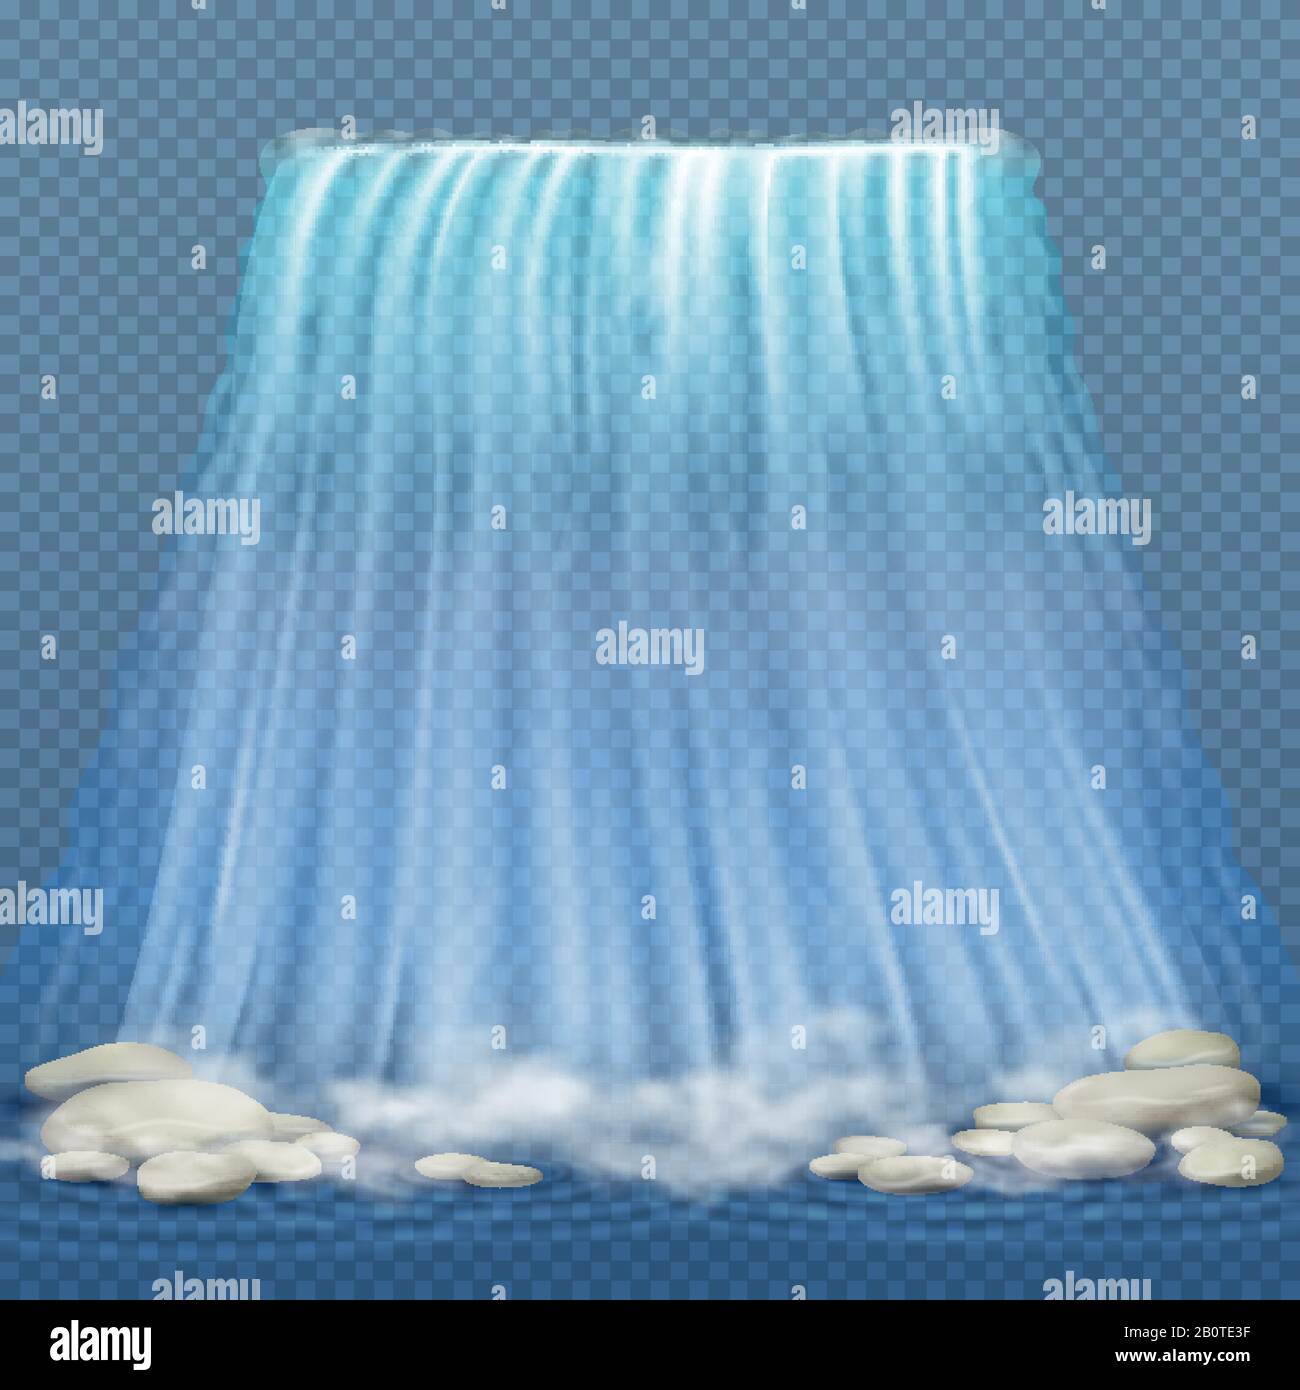 Cascade réaliste avec eau propre bleue et pierres, illustration vectorielle des rapides d'eau. Cascade réaliste avec pierre, illustration de la cascade propre Illustration de Vecteur